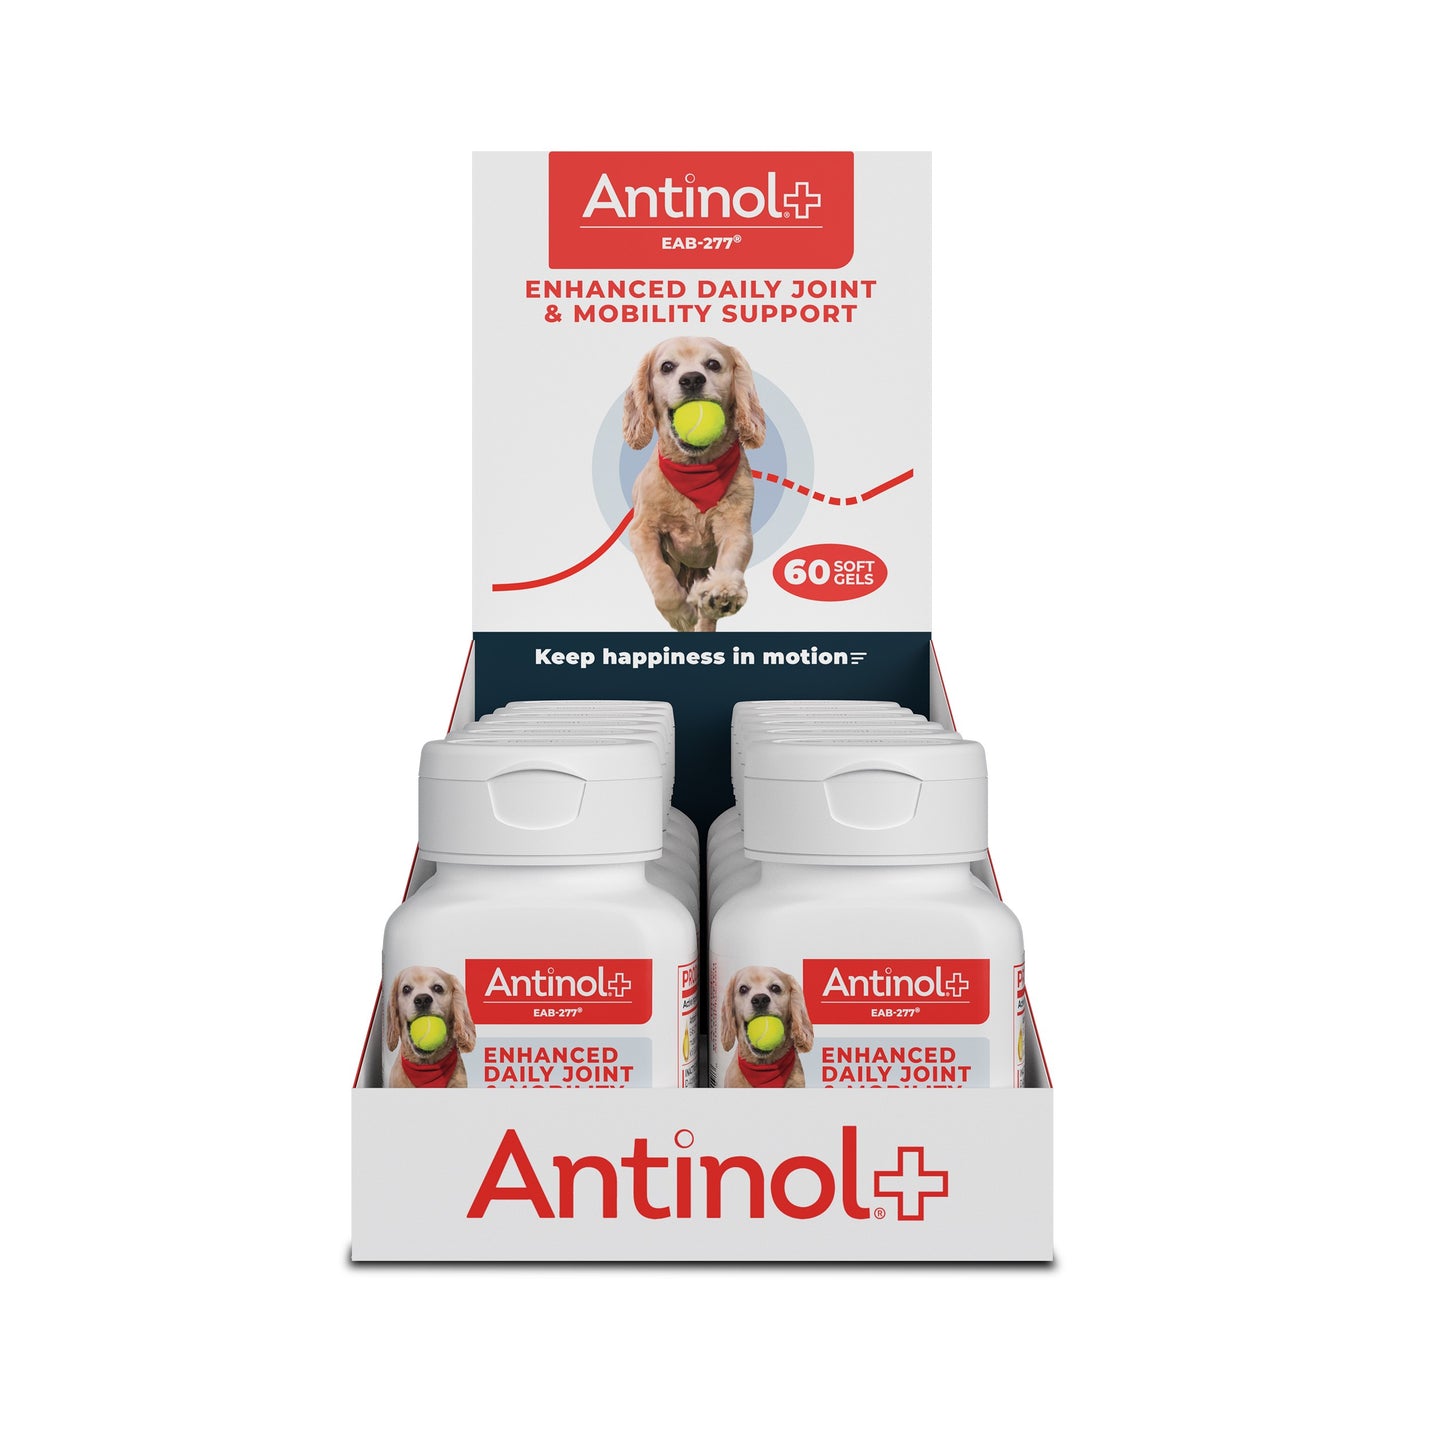 Antinol Plus - Display Shipper - 12 60ct Bottles